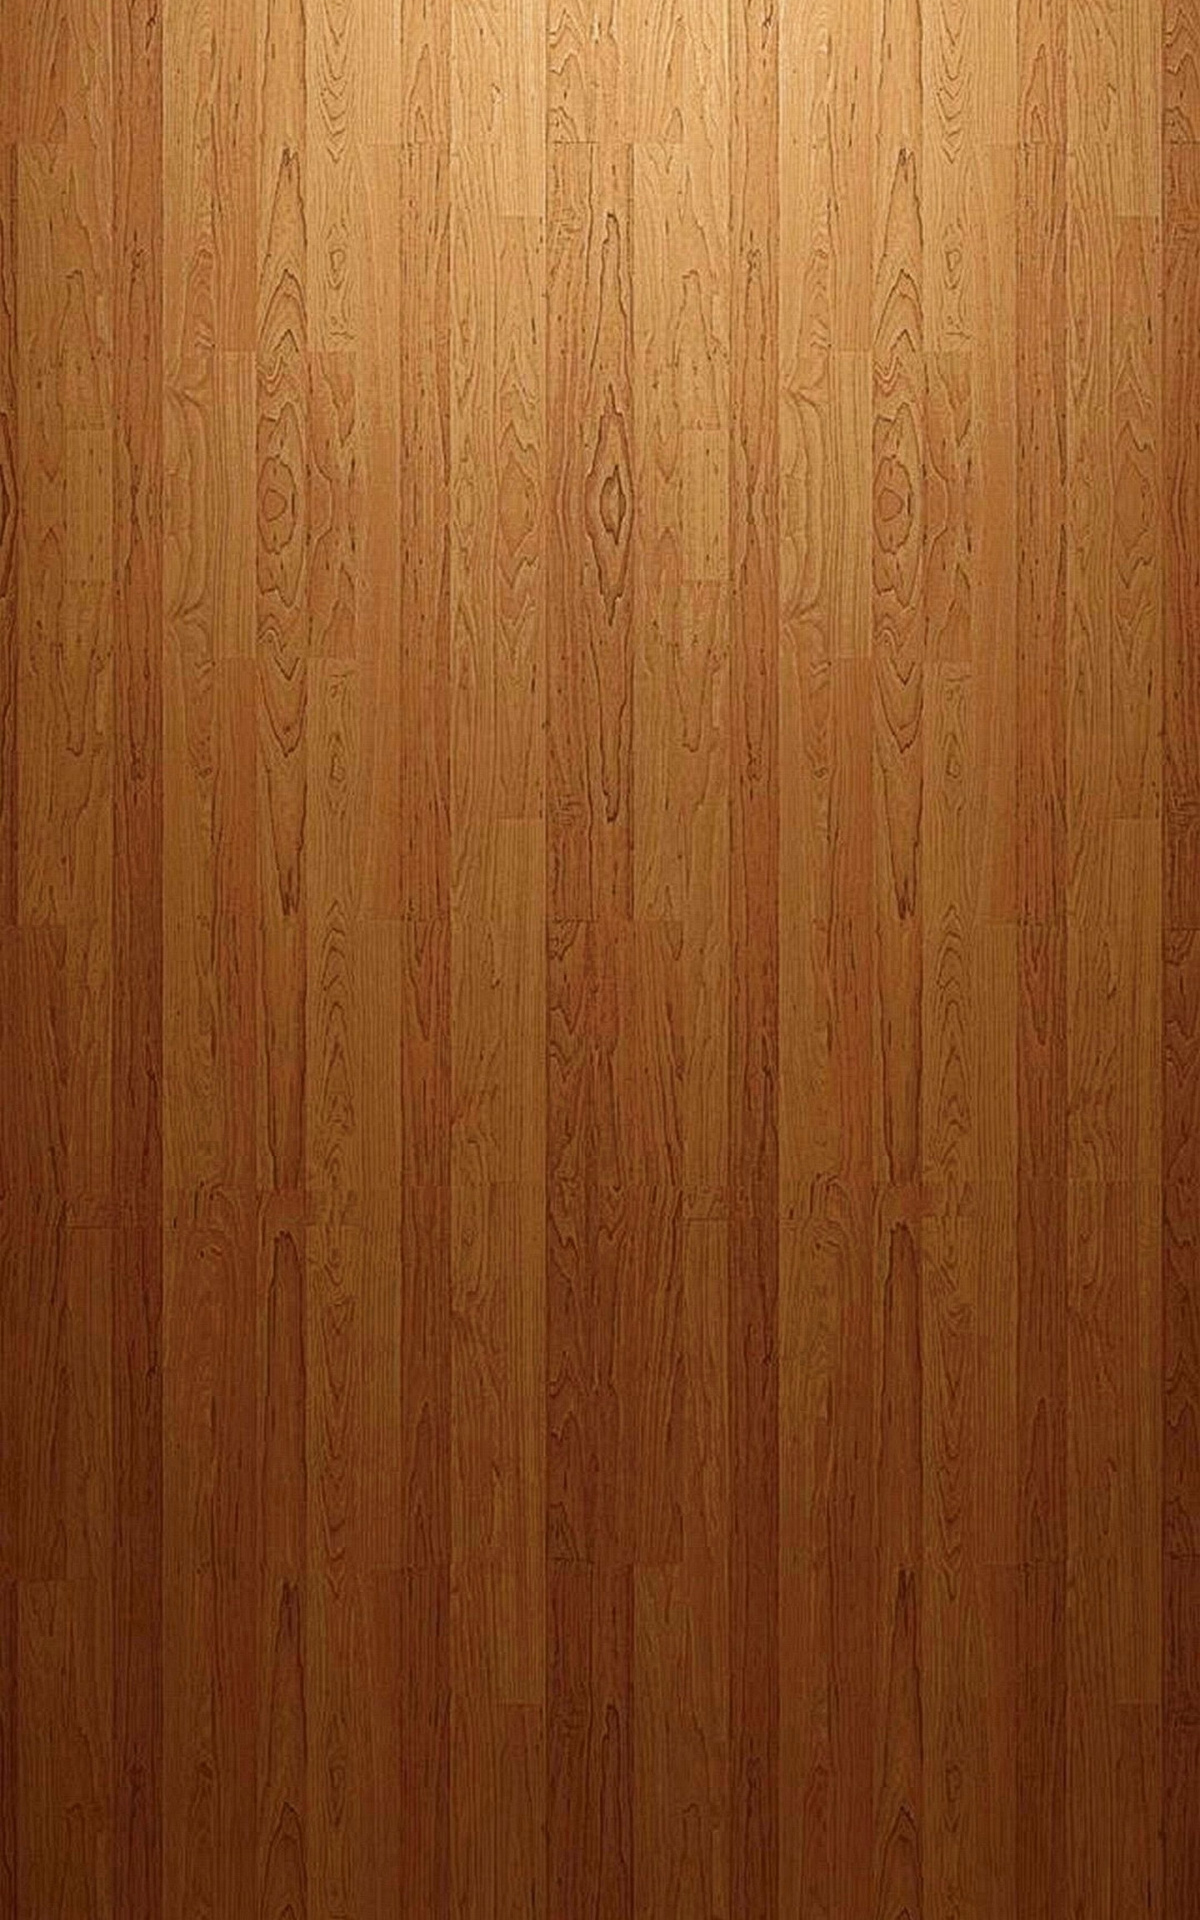 Hardwood Floor, Samsung Galaxy Note 5, Ultra HD texture, Realistic wood grain, 1200x1920 HD Phone